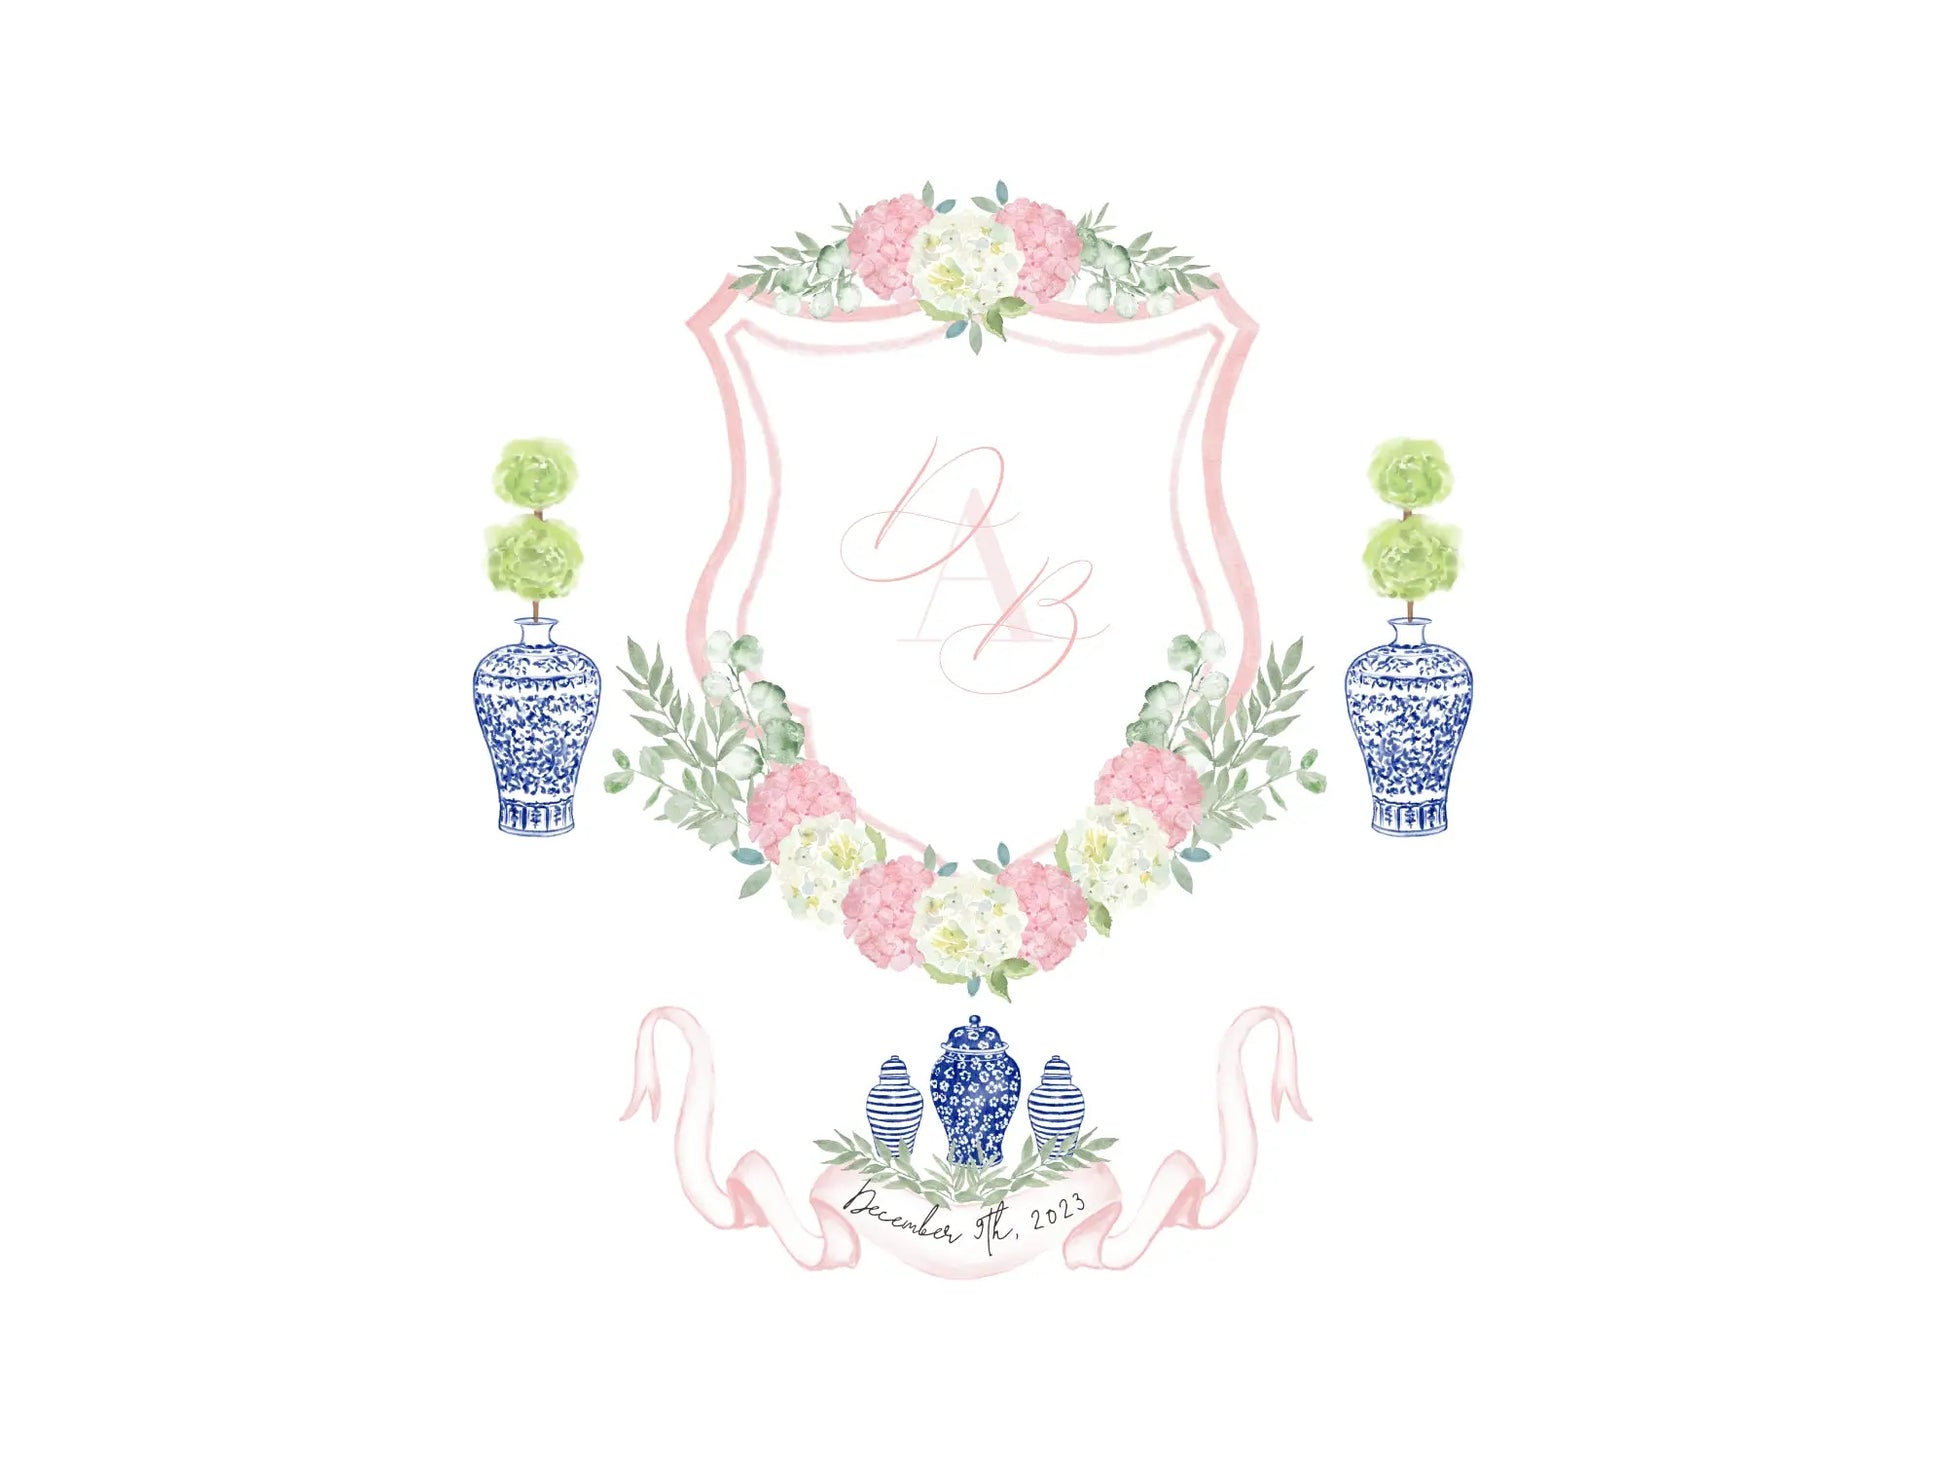 Blue ginger jars wedding crest, pink and white hydrangea wedding crest, monogram crest, watercolor crest, hydrangeas floral crest The Wedding Crest Lab